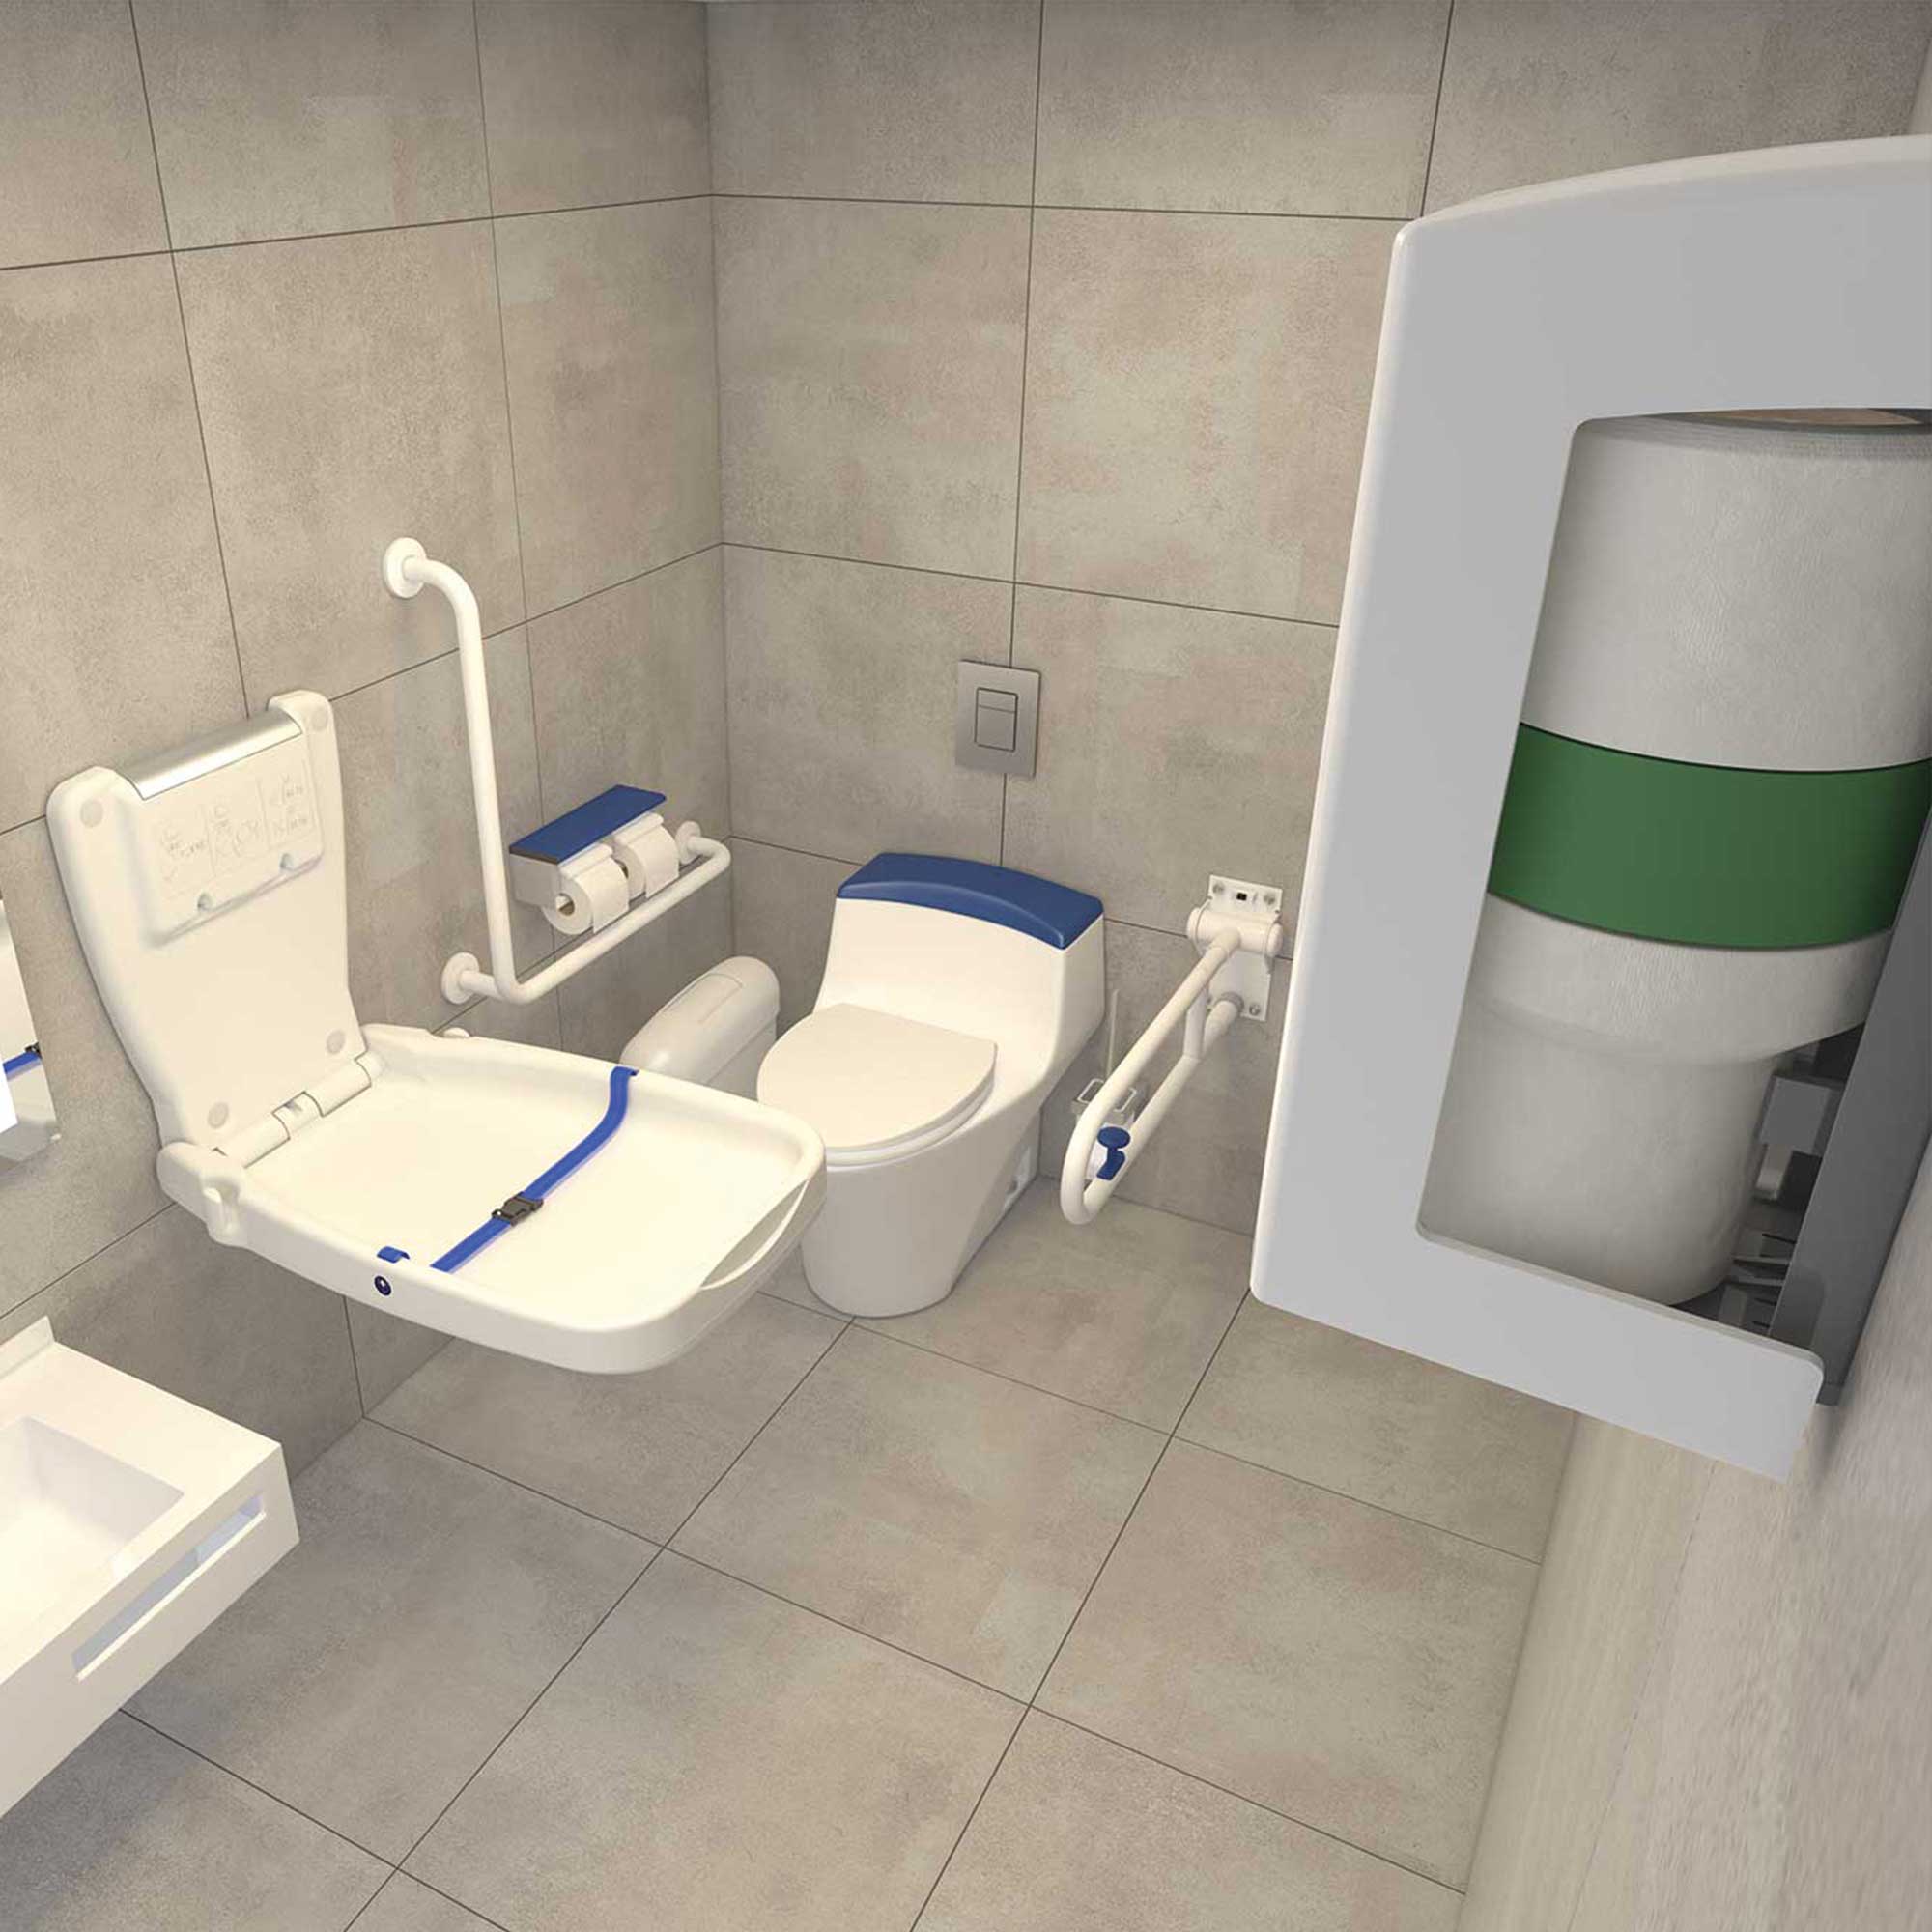 V-Air® SOLID MVP disabled restroom